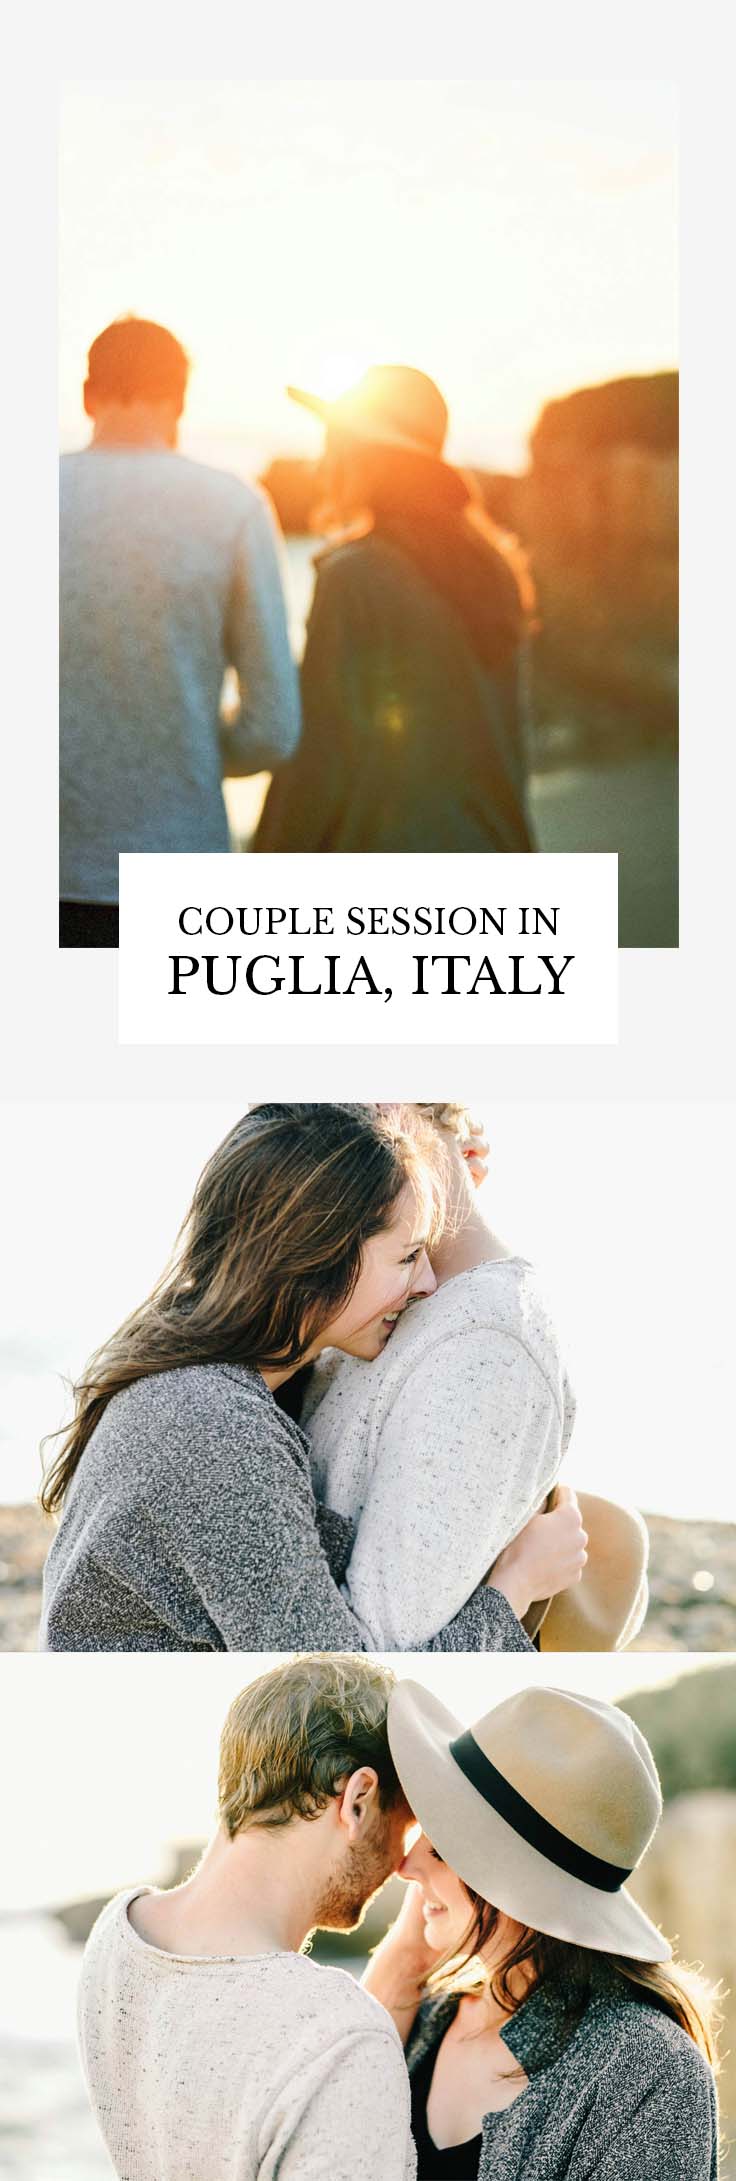 COUPLE SESSION PUGLIA ITALY